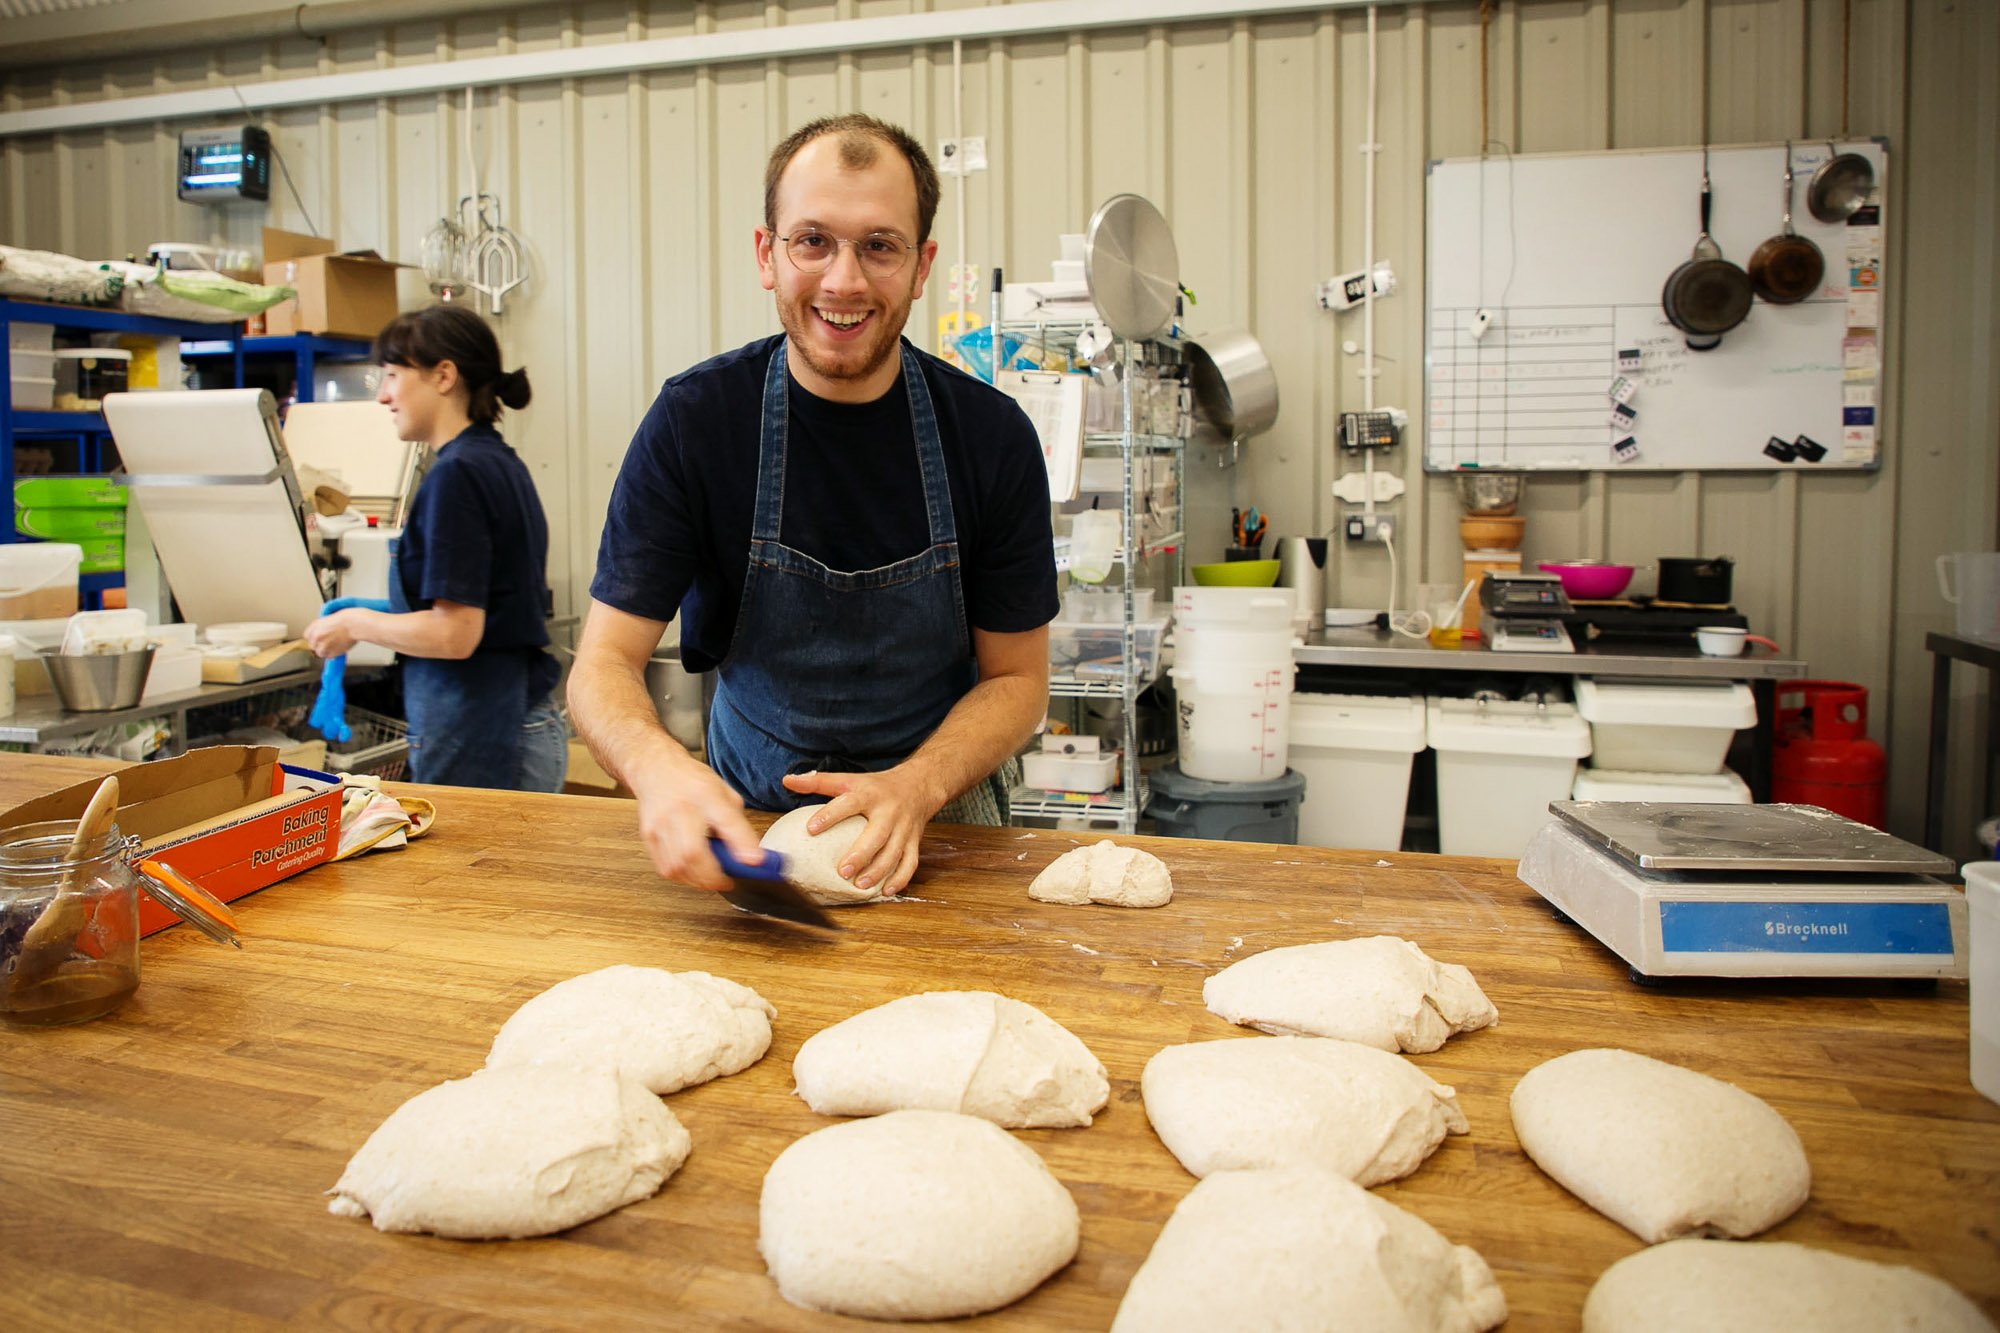 Baker preparing bread dough.jpg